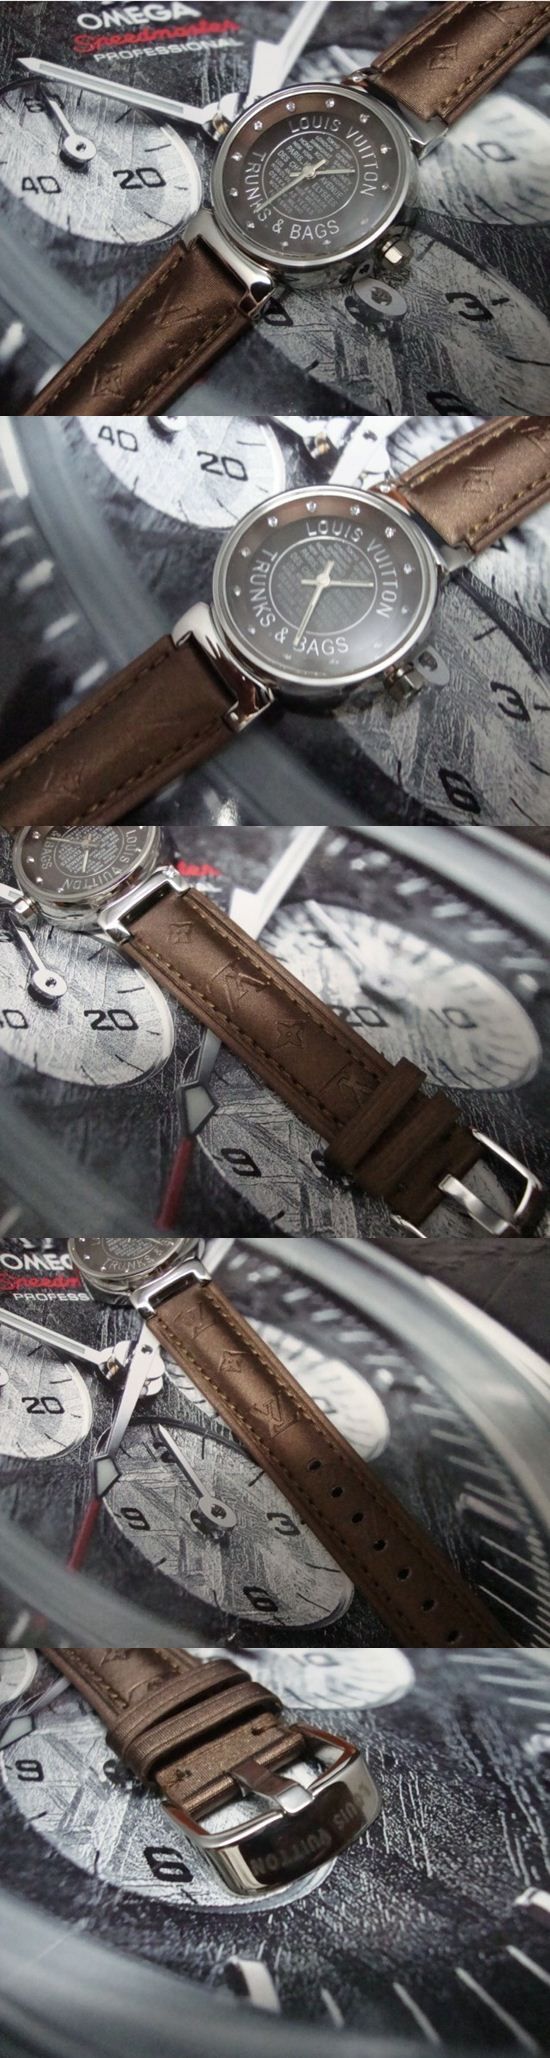 おしゃれなブランド時計がLOUIS-VUITTON-ルイヴィトン腕時計 ルイヴィトン 男/女性用腕時計 LOUIS-VUITTON-N-004Aを提供します.